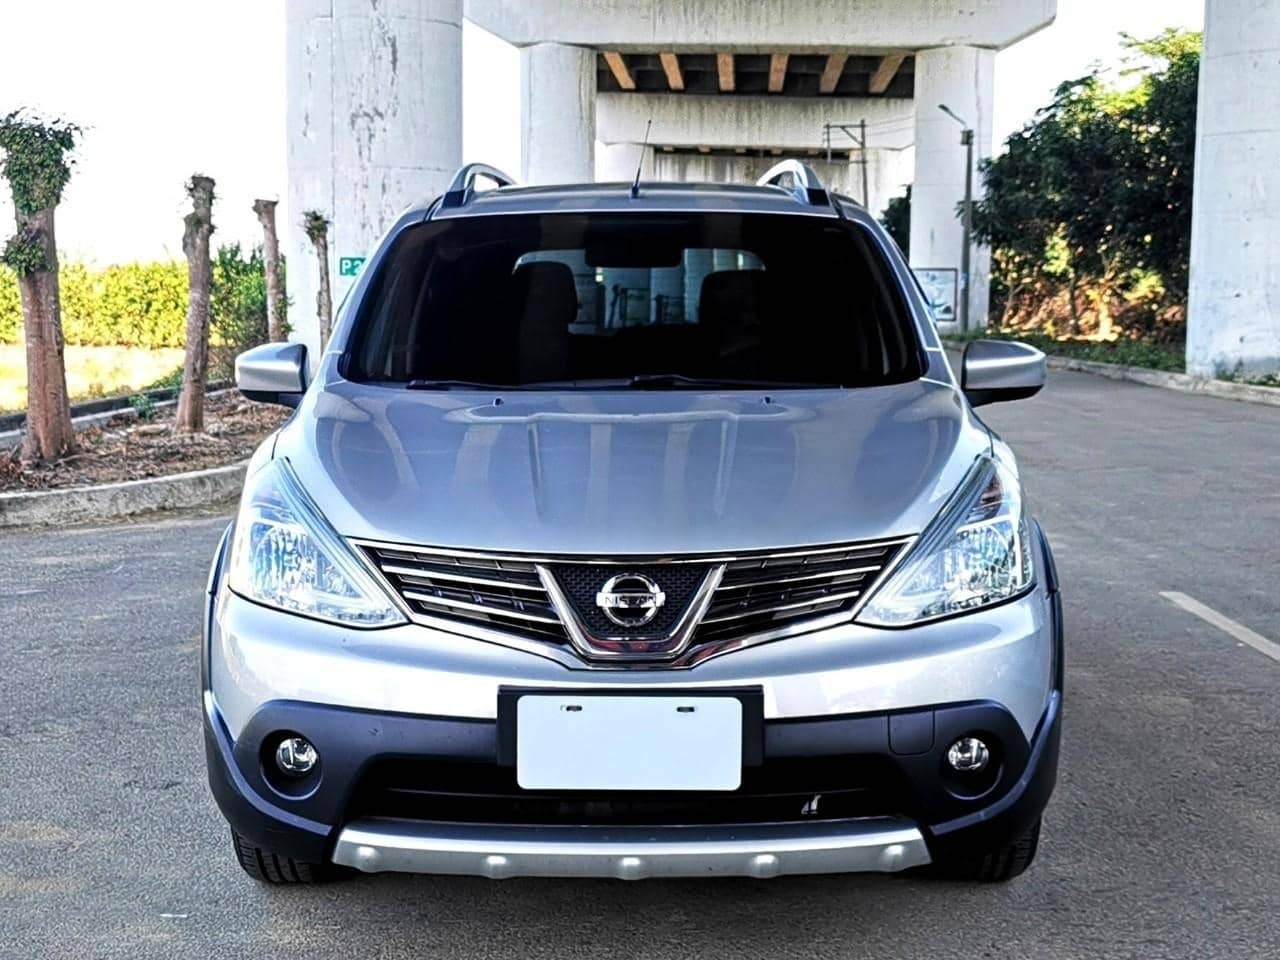 Nissan_usedcar_2017_Livina_1.6_166903km_Nissan中古車_Livina_圖片